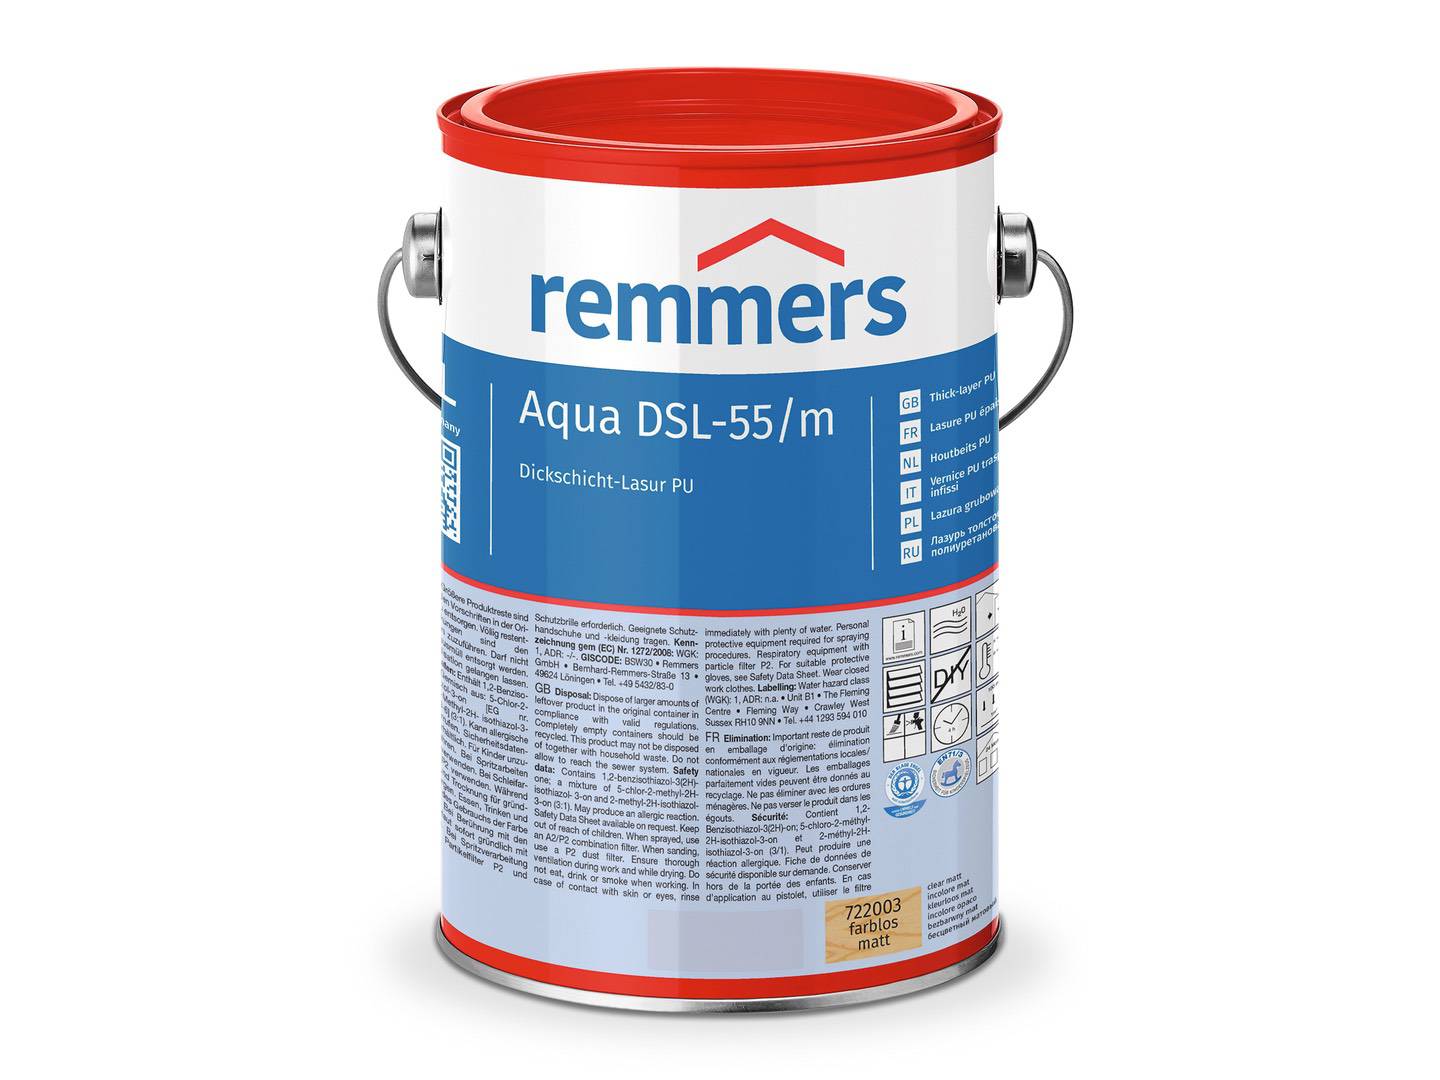 REMMERS Aqua DSL-55-Dickschicht-Lasur PU teak (RC-545) seidenglänzend 2,50 l